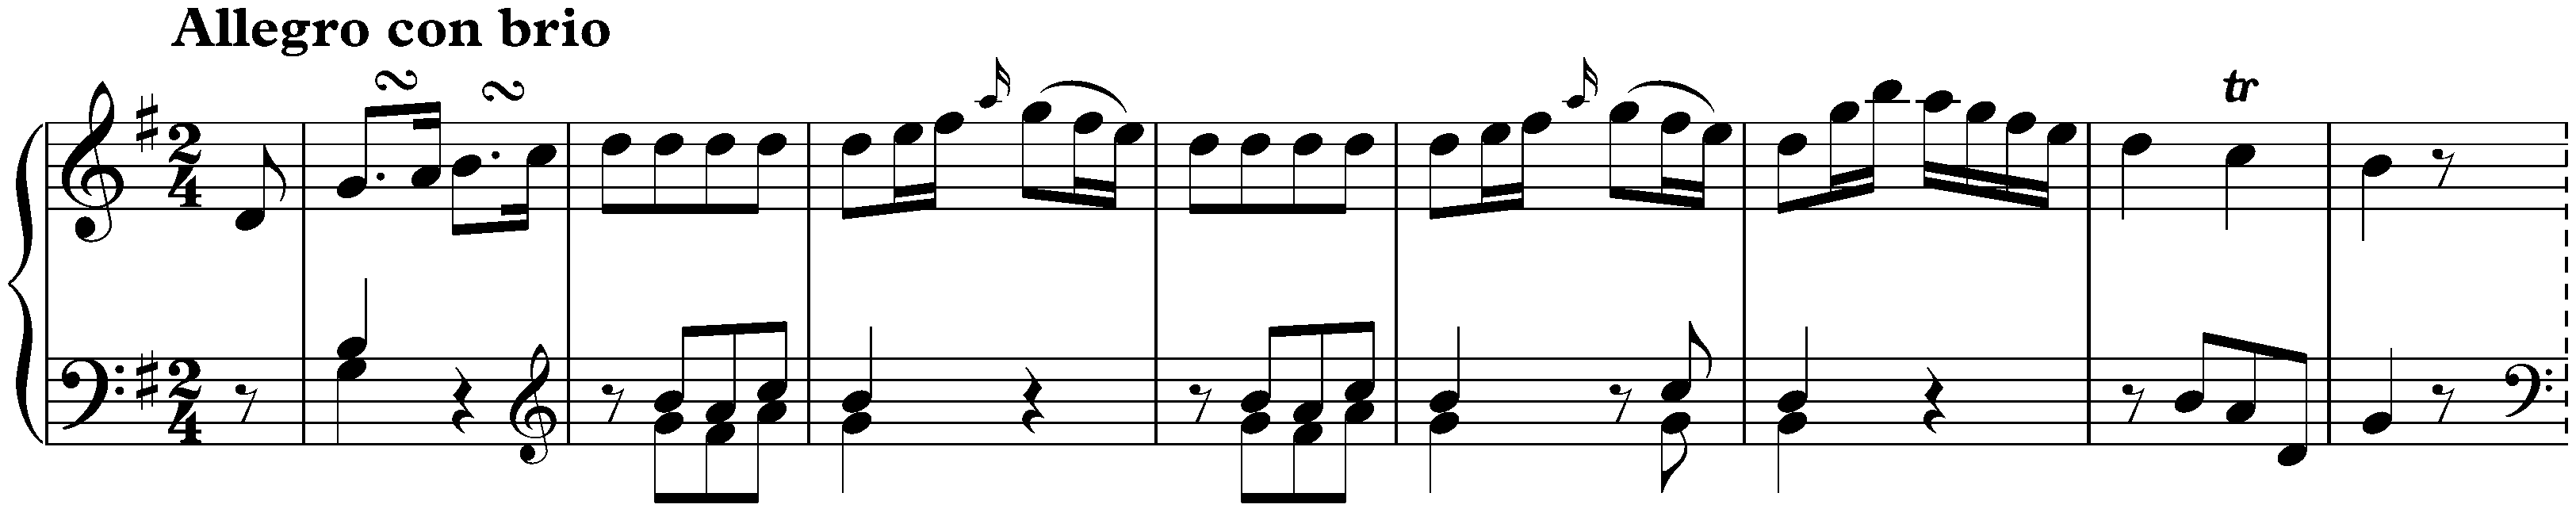 Sonata in G major, Hob. XVI:27; 1. Allegro con brio